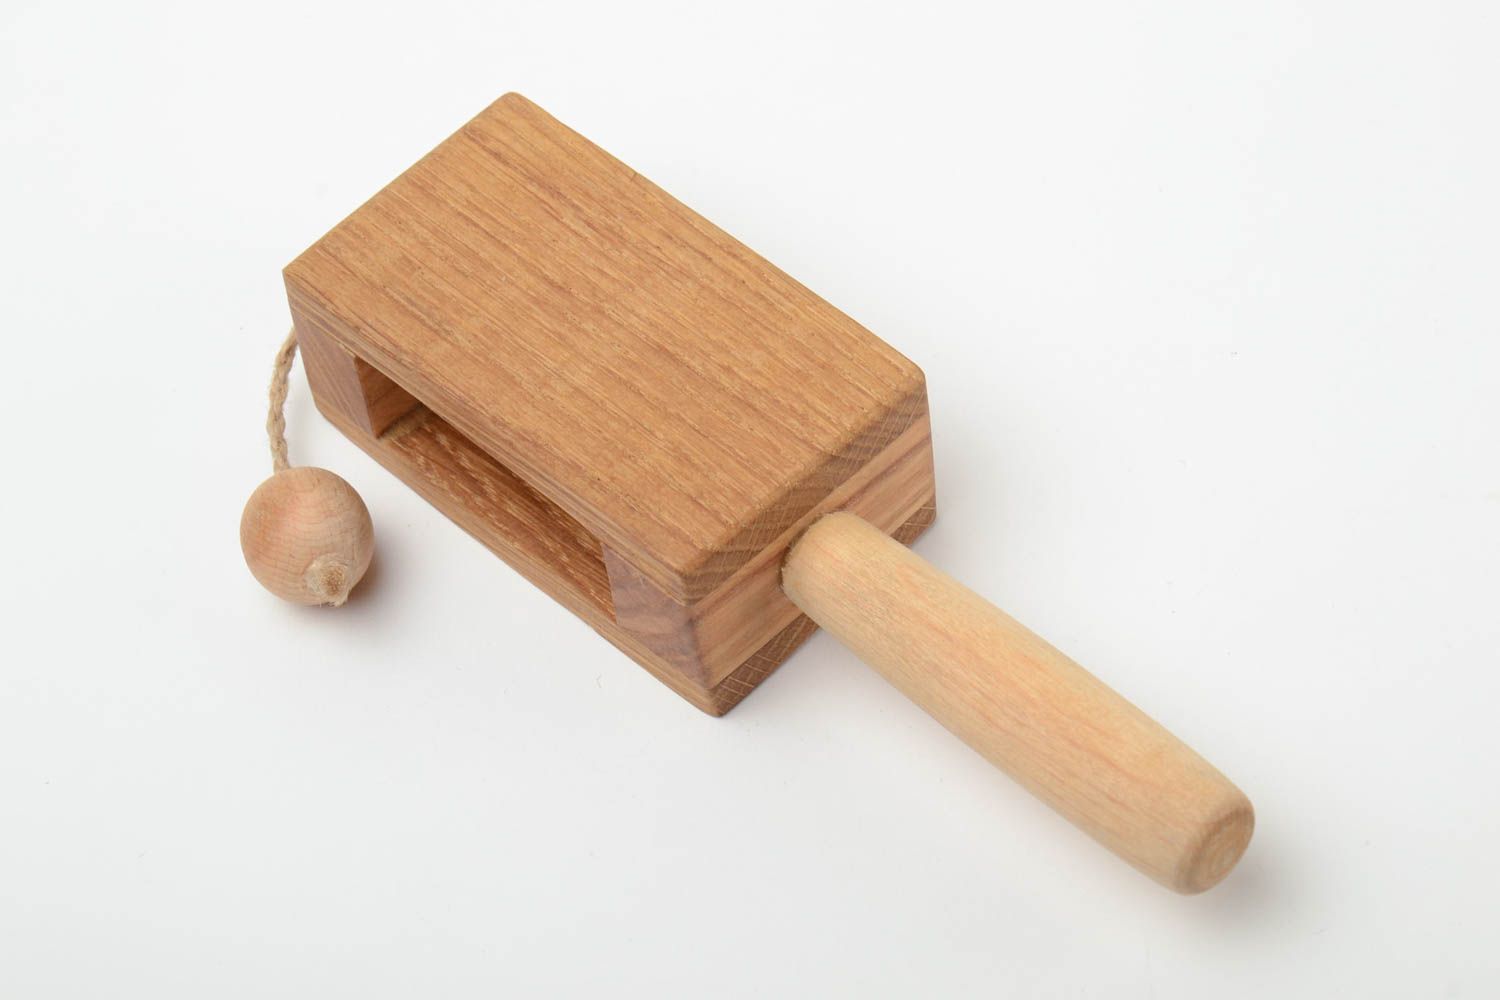 Öko Holz Spielzeug für Kinder mit Leinöl durchtränkt aus Eichenholz handgemacht foto 3